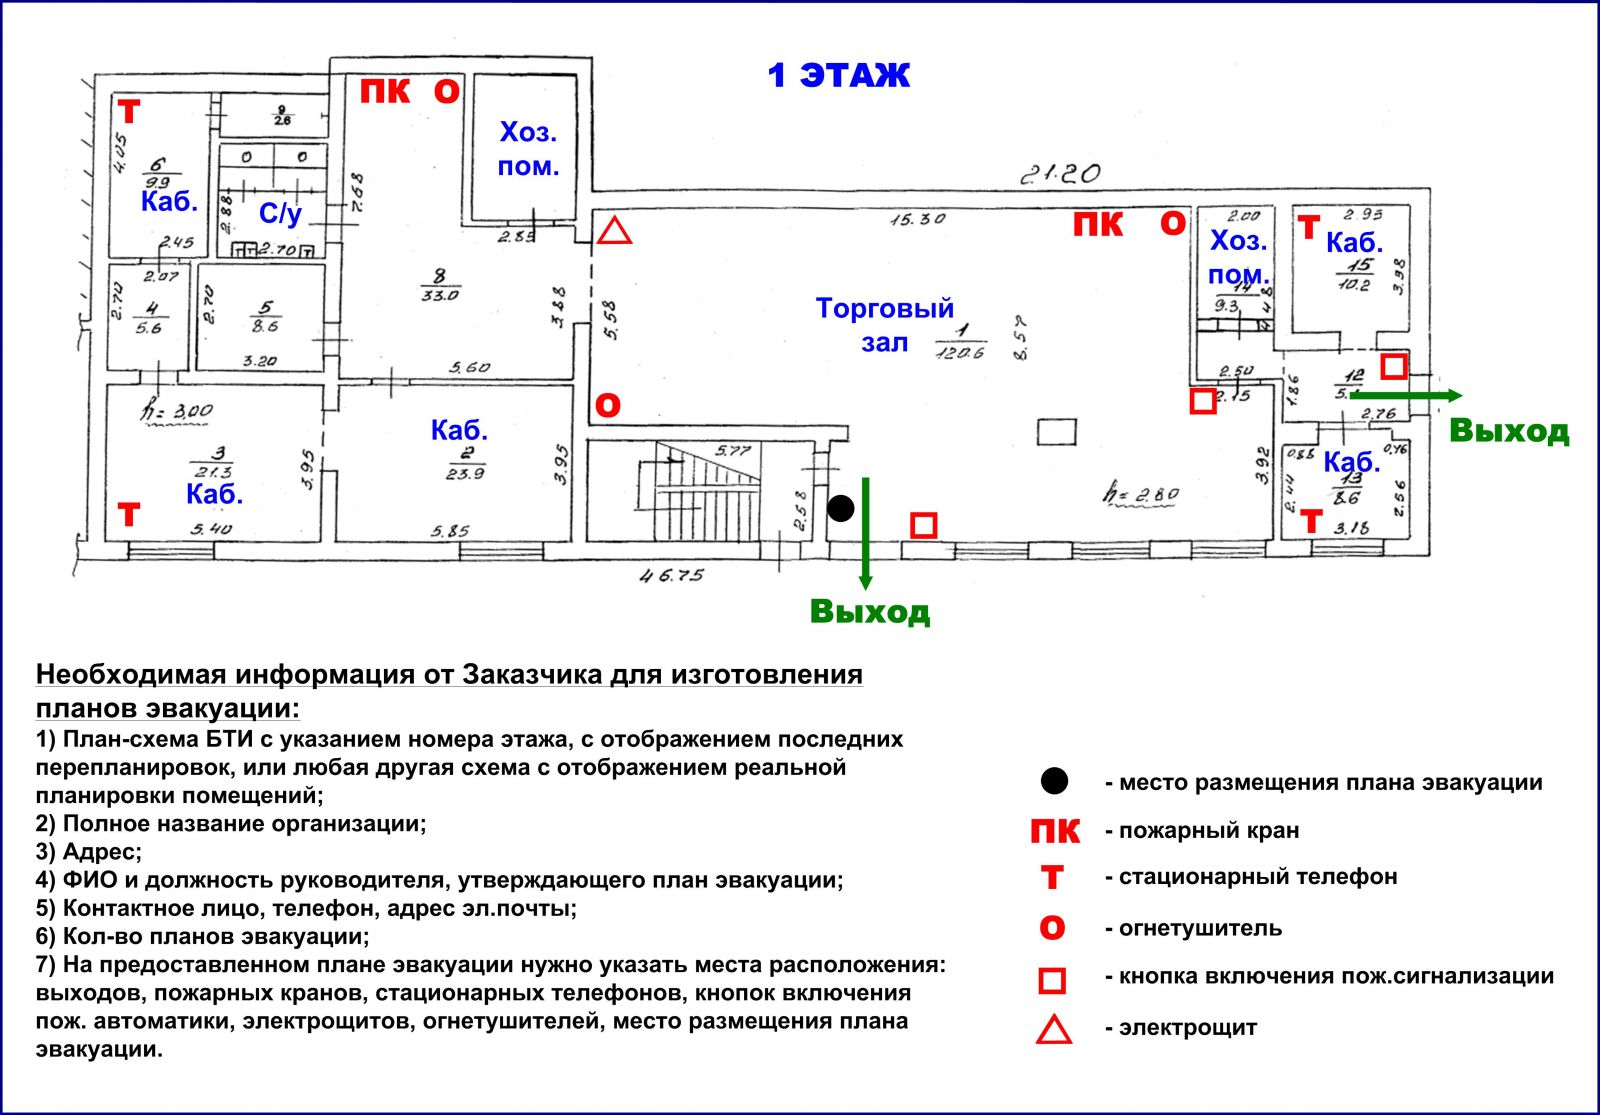 Пример оформления п.6 на техническом плане-схеме помещения: